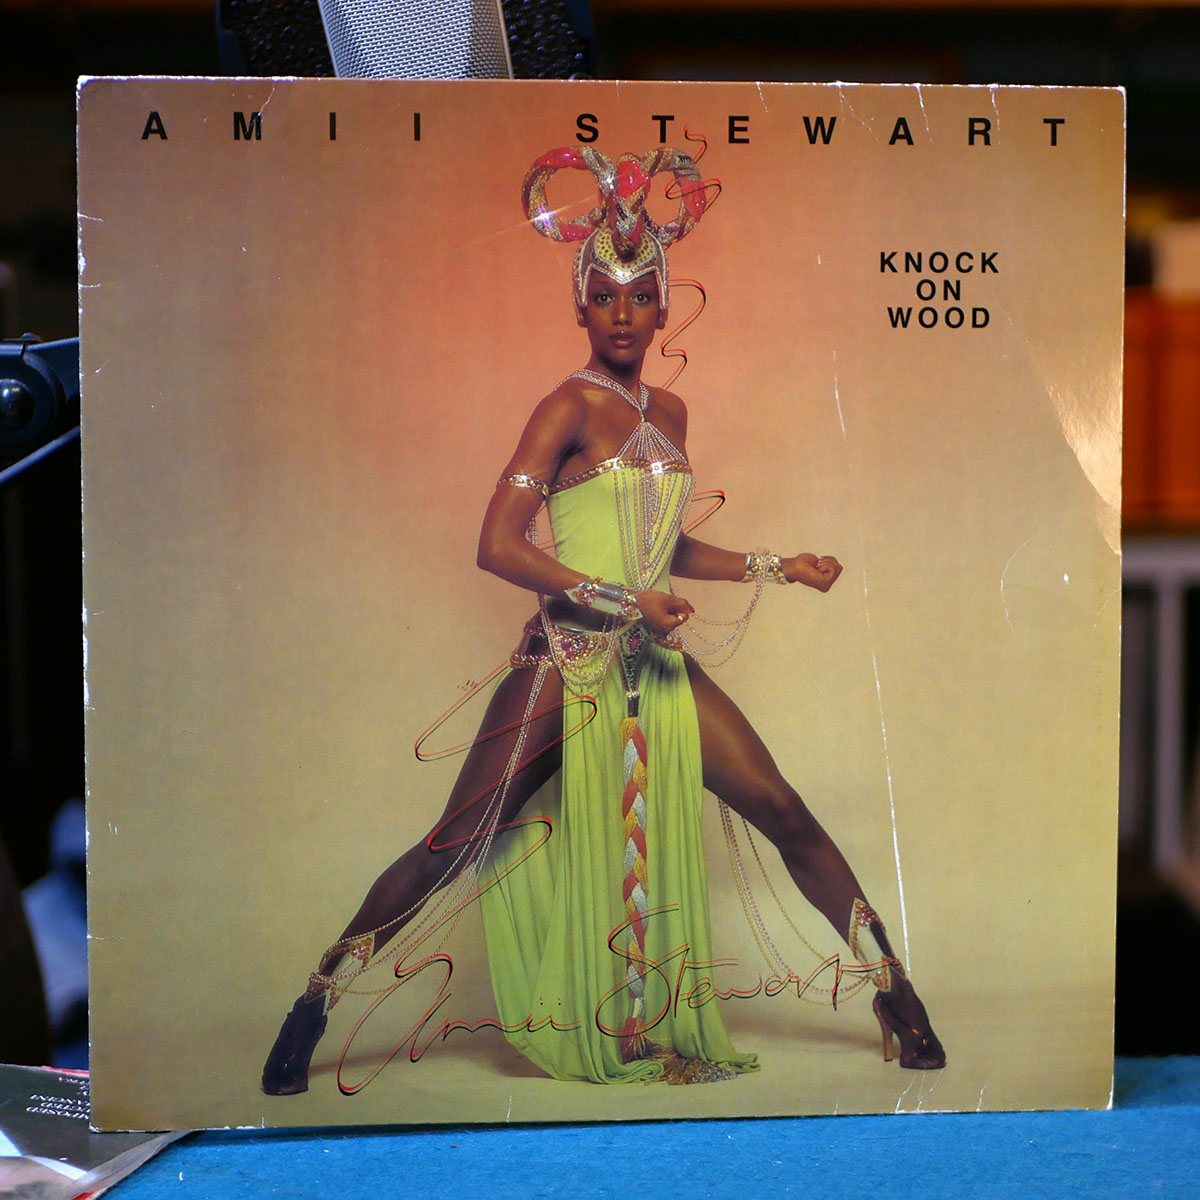 Amii Stewart – Knock on Wood [LP, 1979]